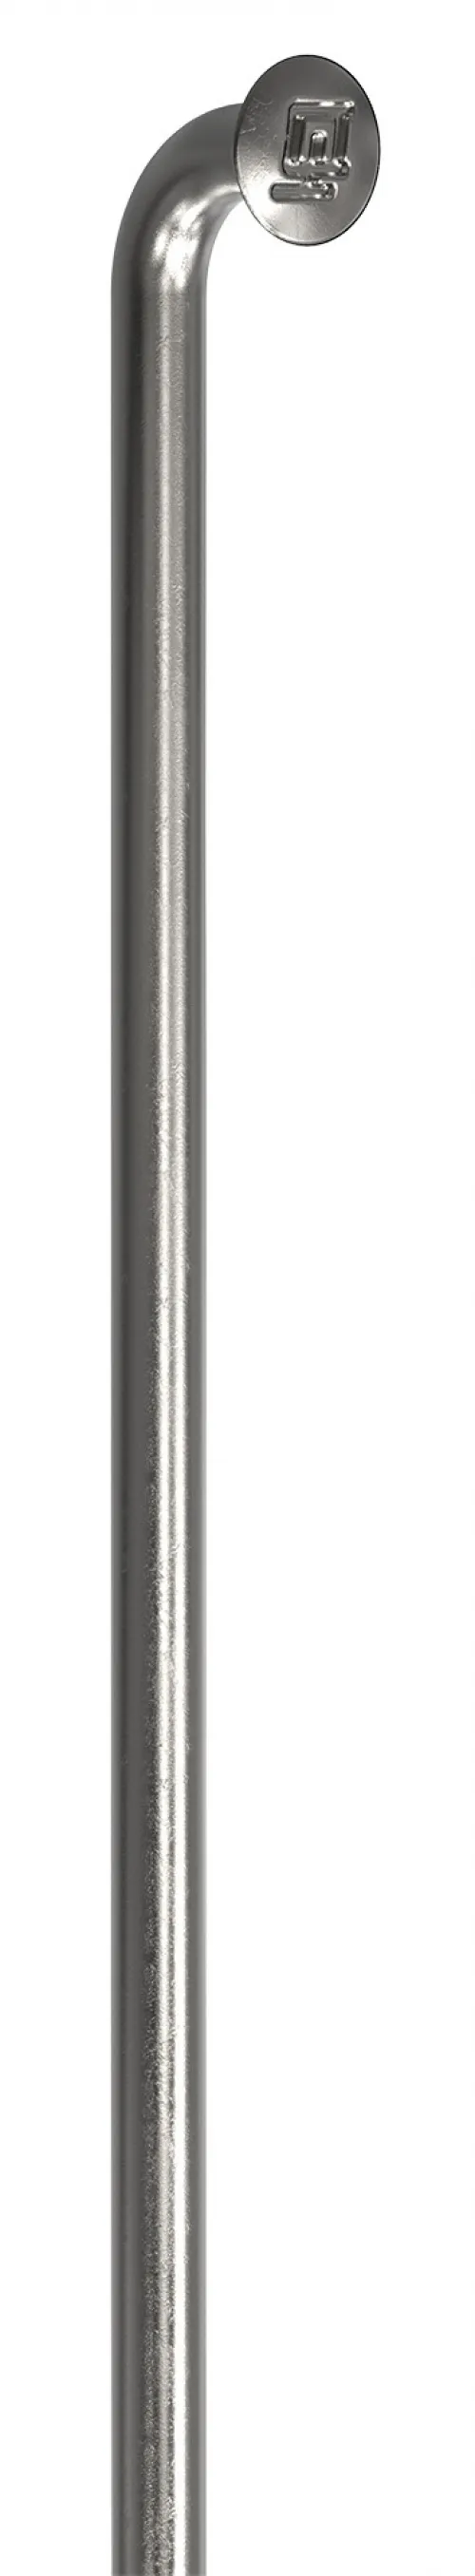 Спицы DT Swiss Champion (J-bend) 2.0mm x 142mm silver 100шт